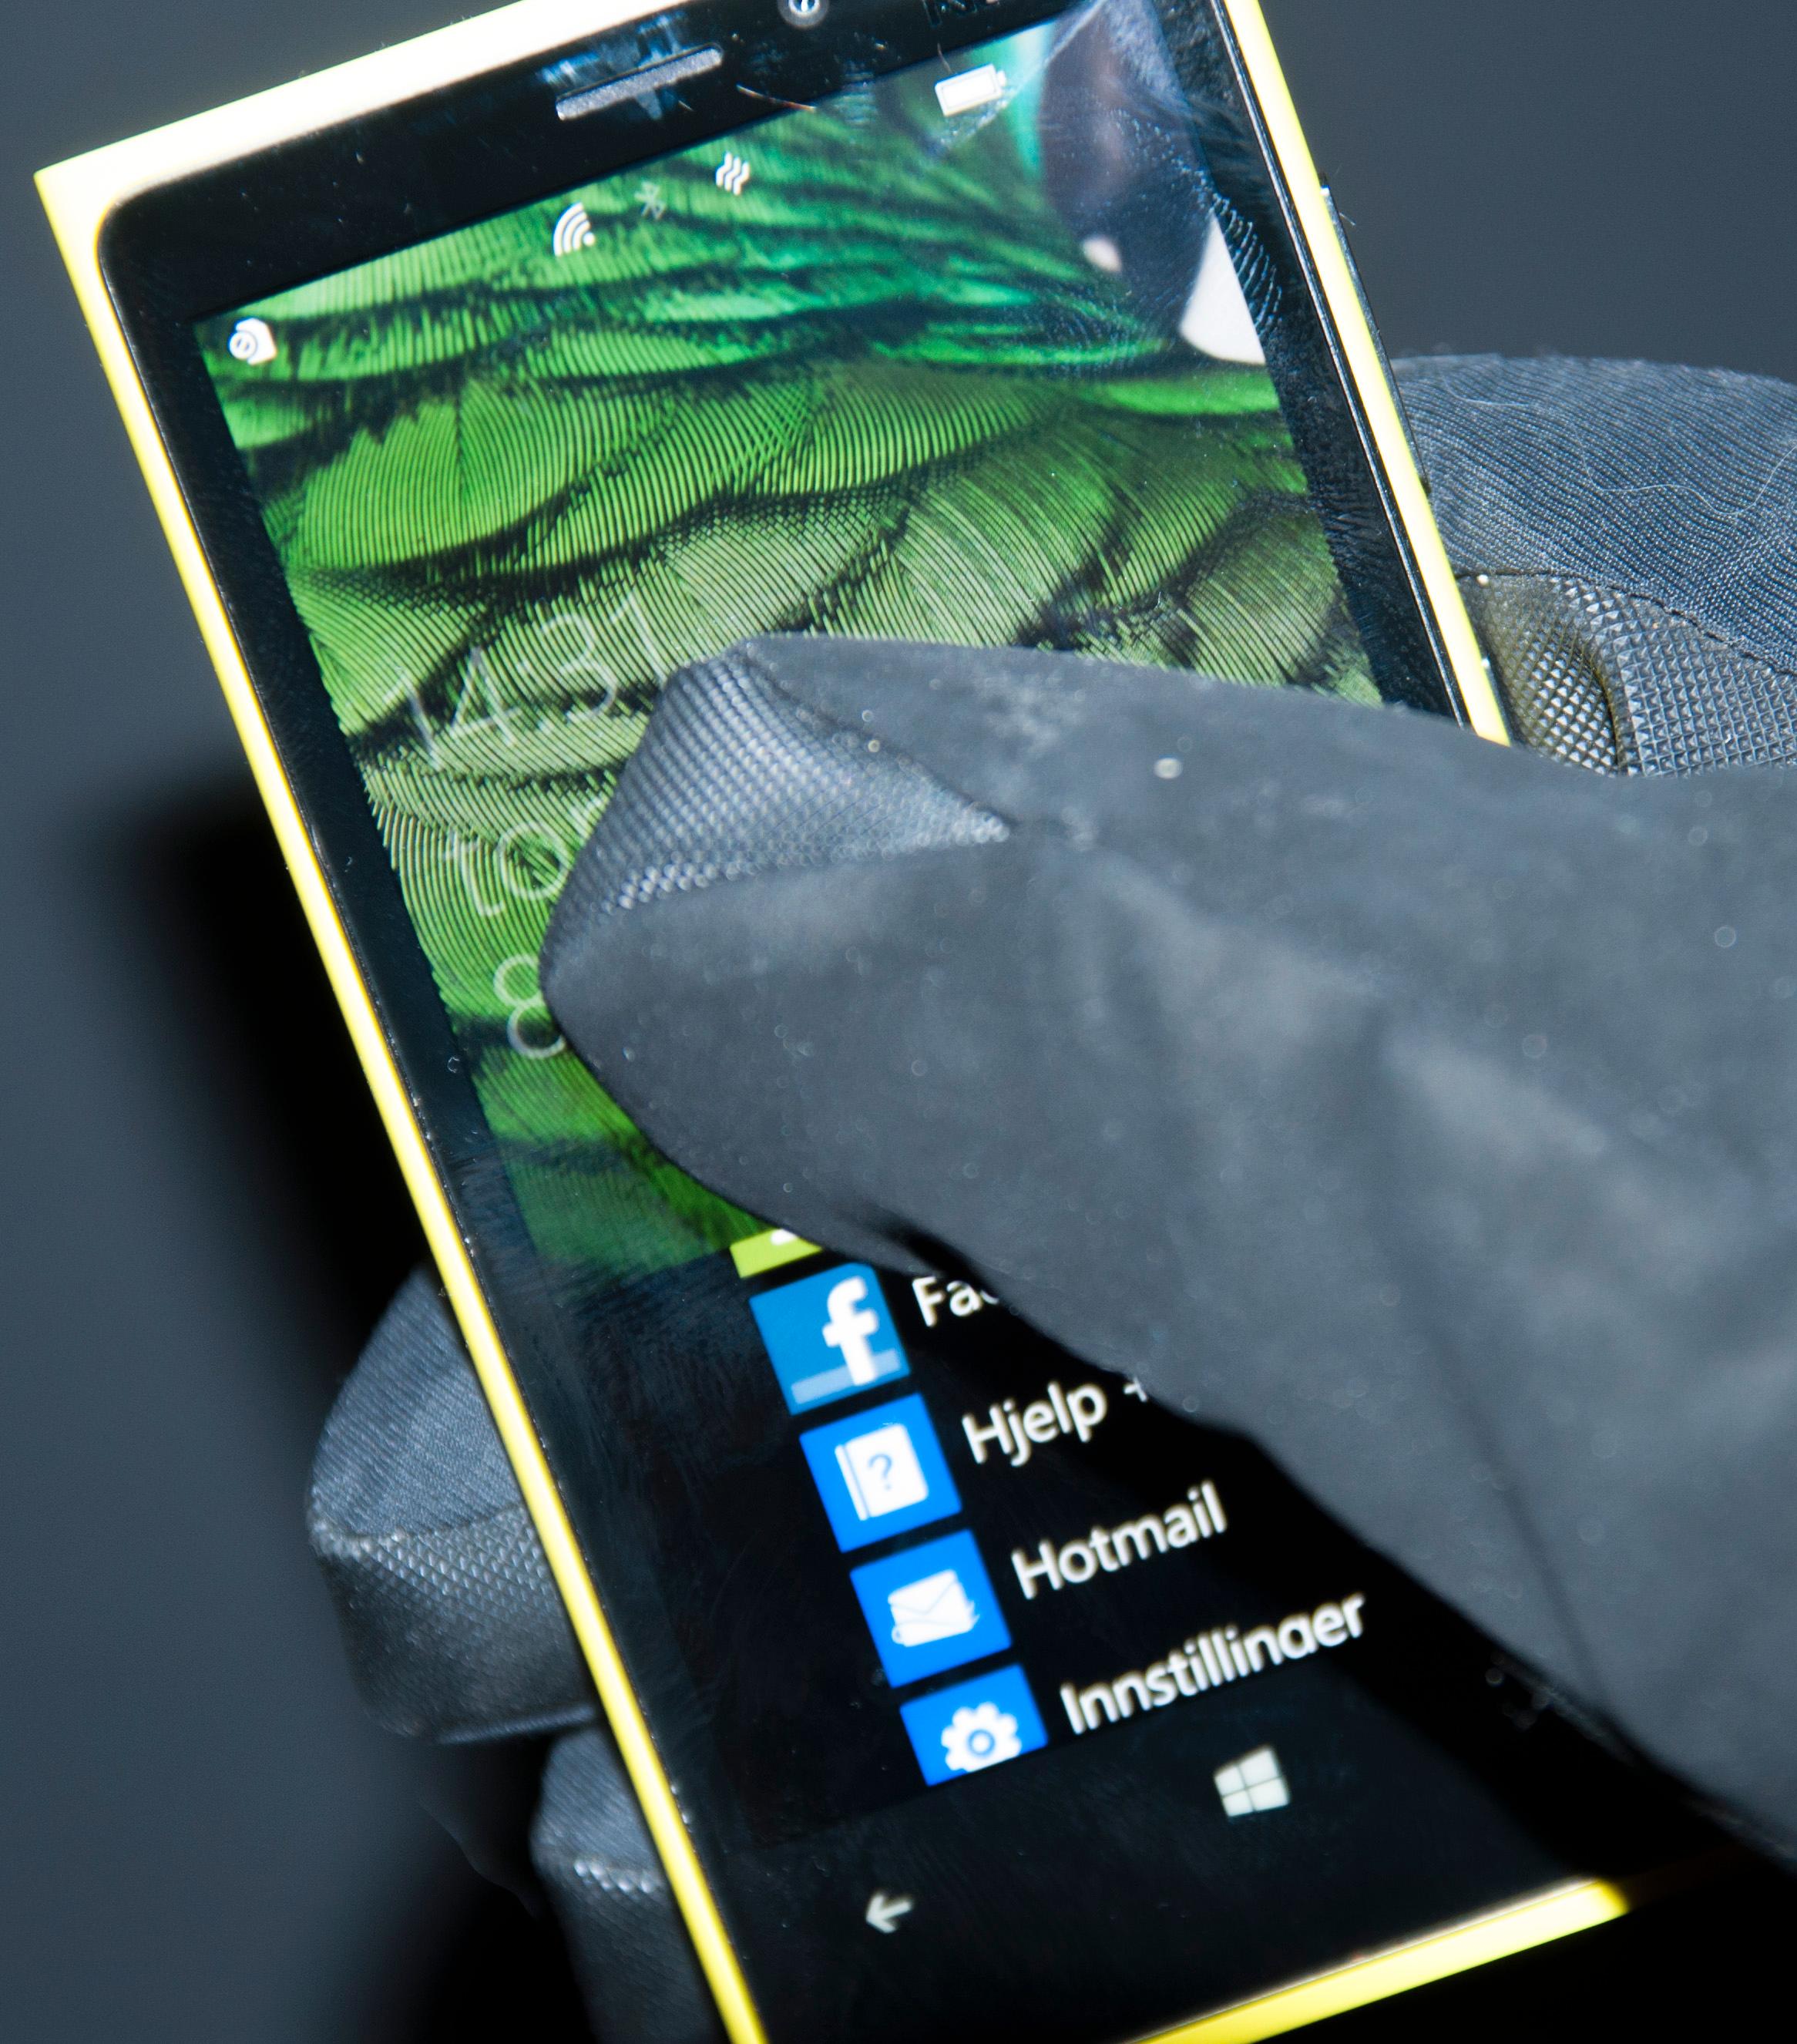 Berøringsskjermen i Lumia 920 er så følsom at den fungerer selv om du har på deg hansker.Foto: Finn Jarle Kvalheim, Amobil.no